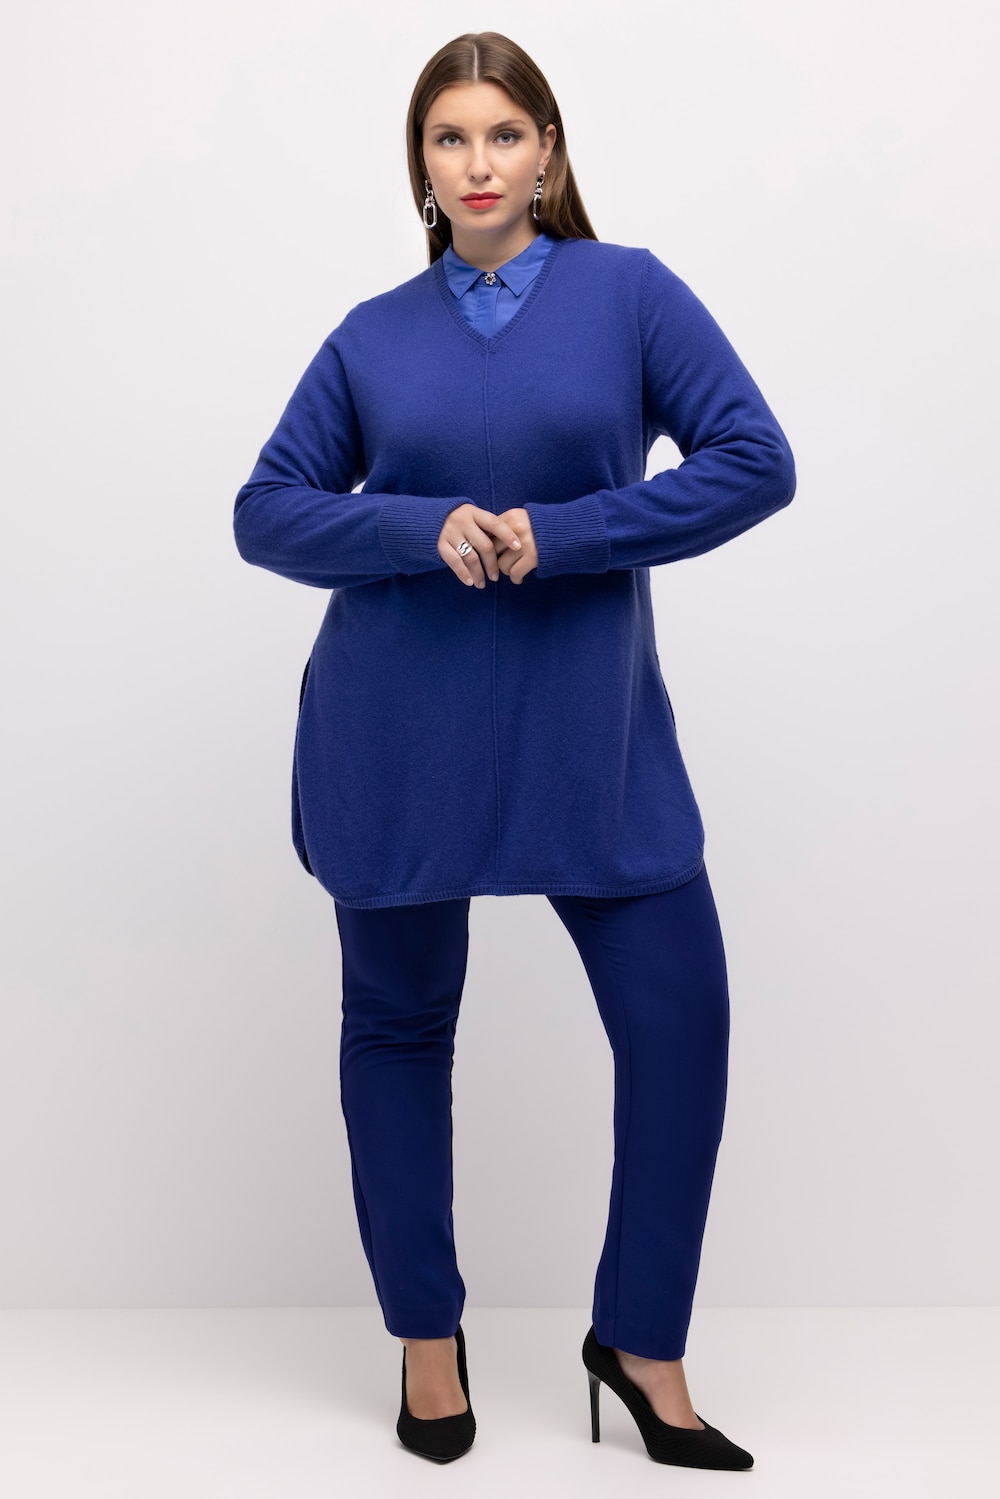 Große Größen Pullover, Damen, blau, Größe: 46/48, Wolle, Ulla Popken von Ulla Popken